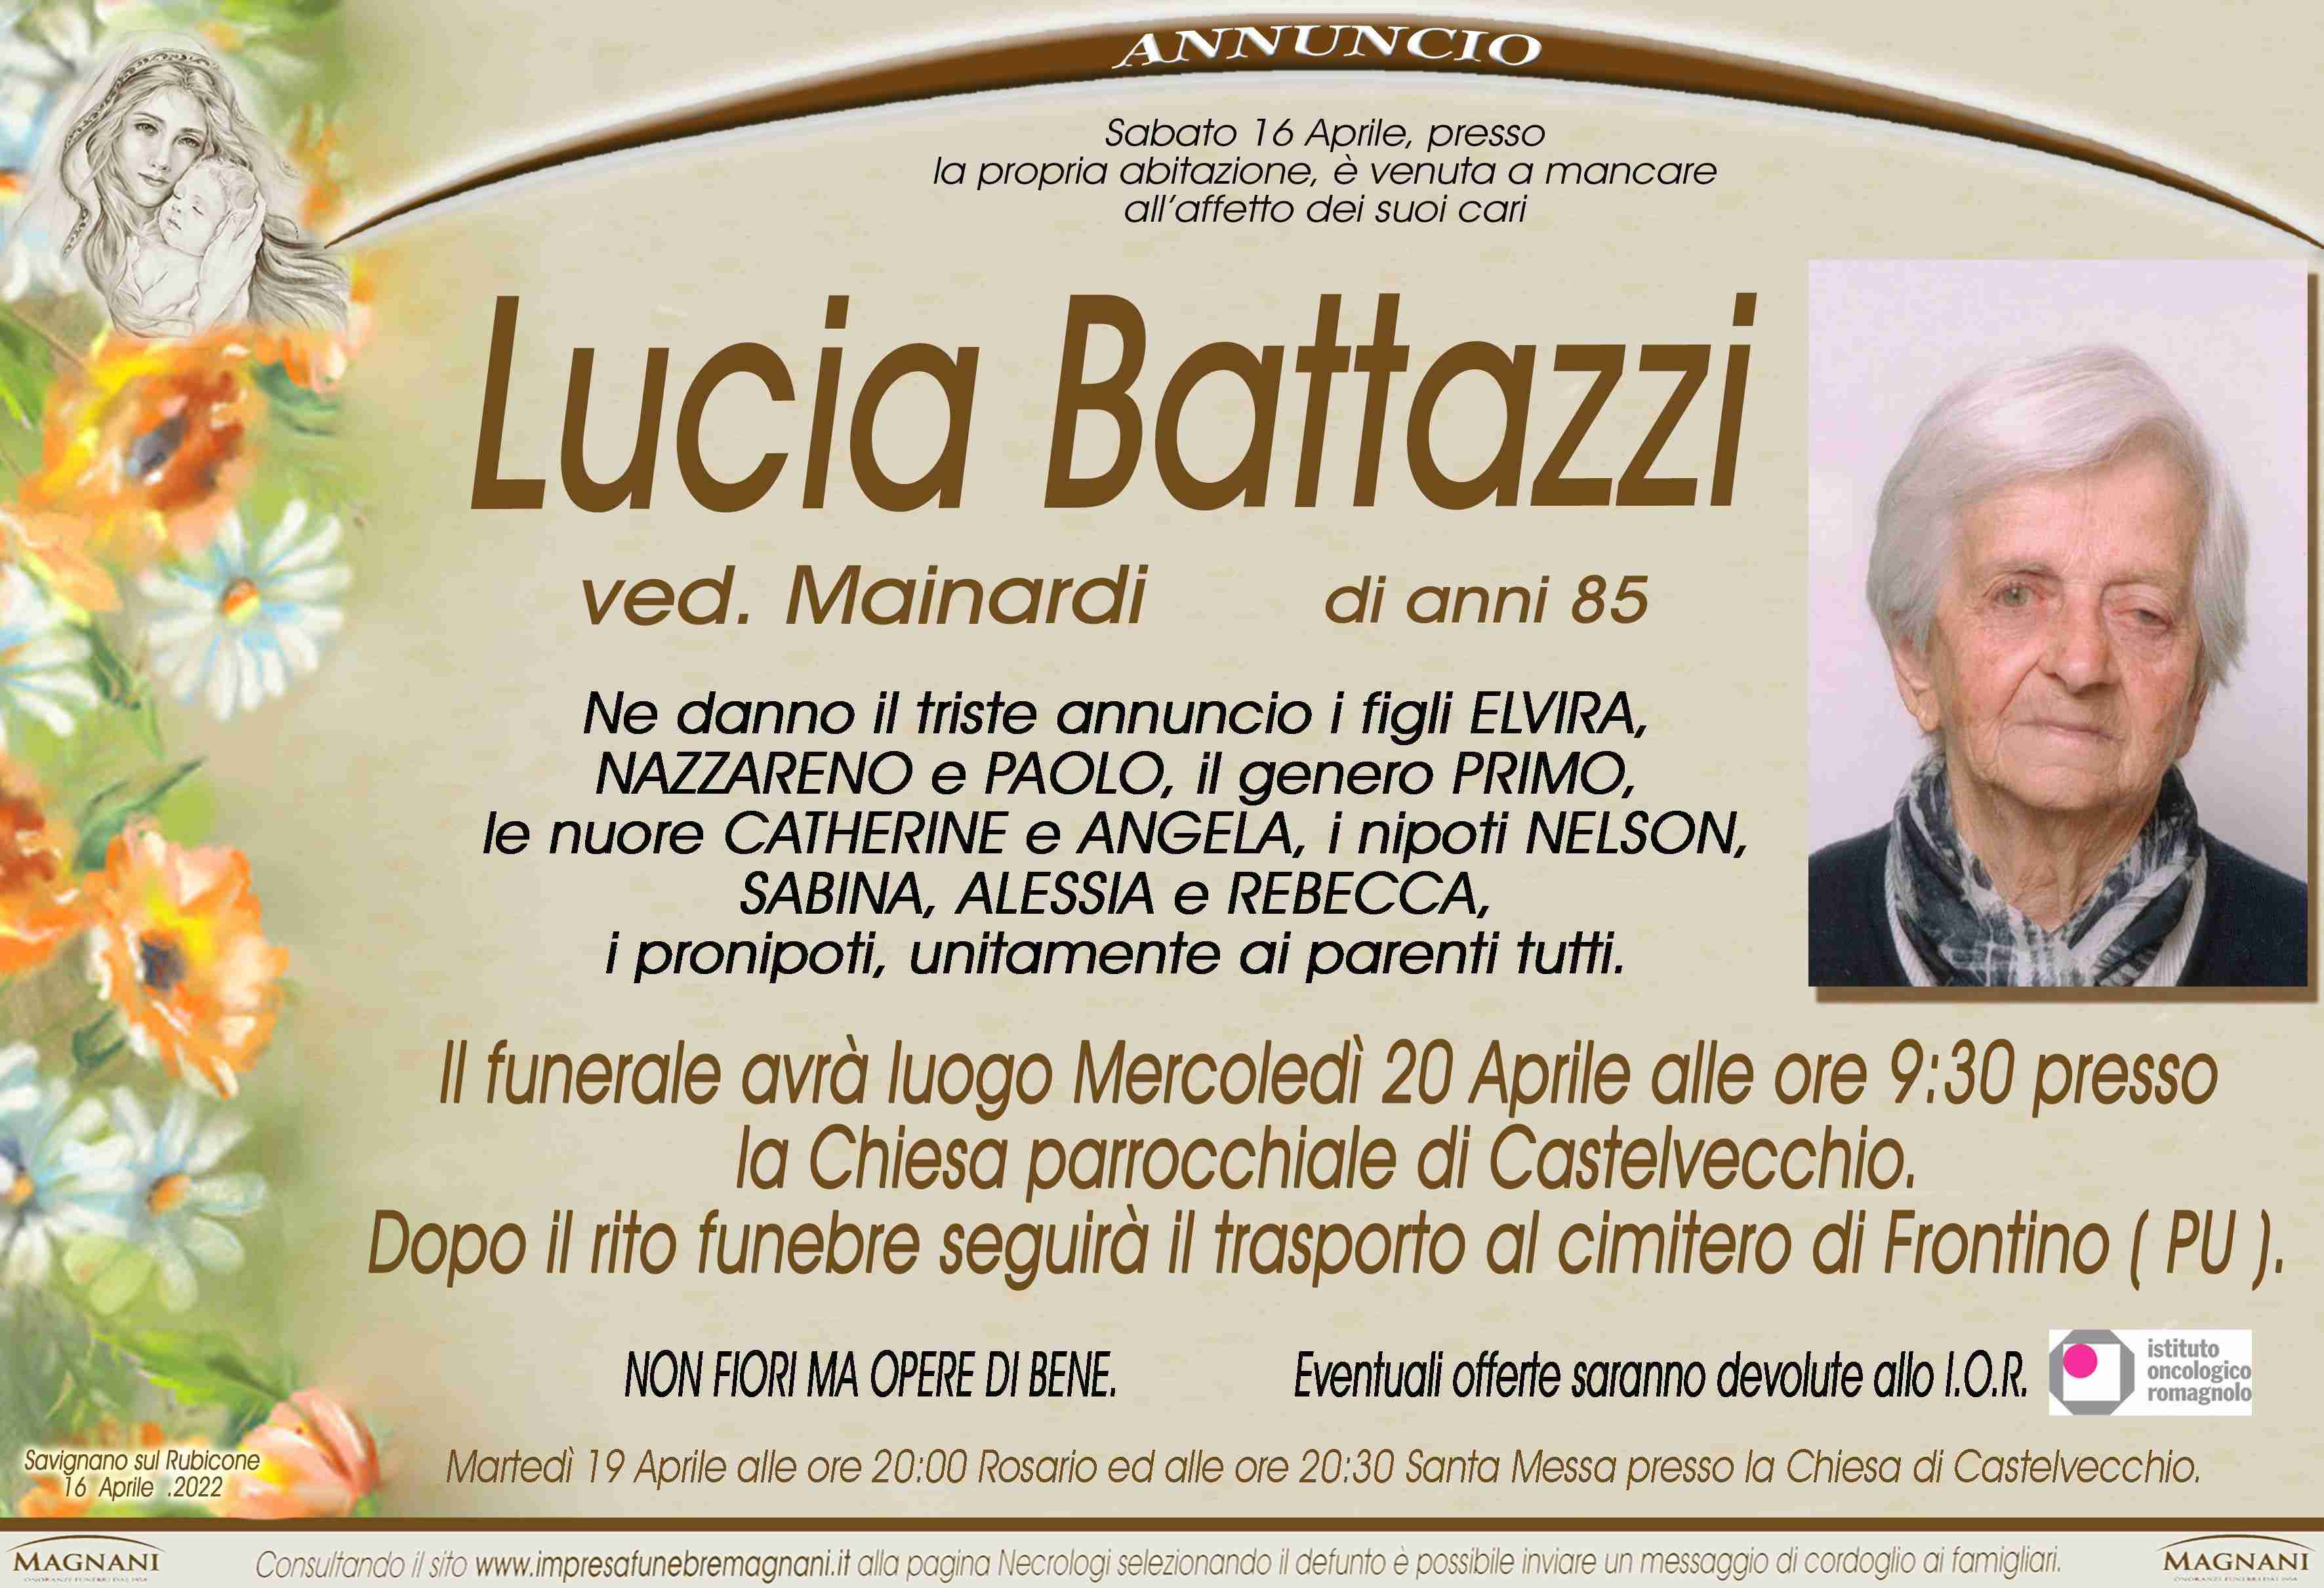 Lucia Battazzi